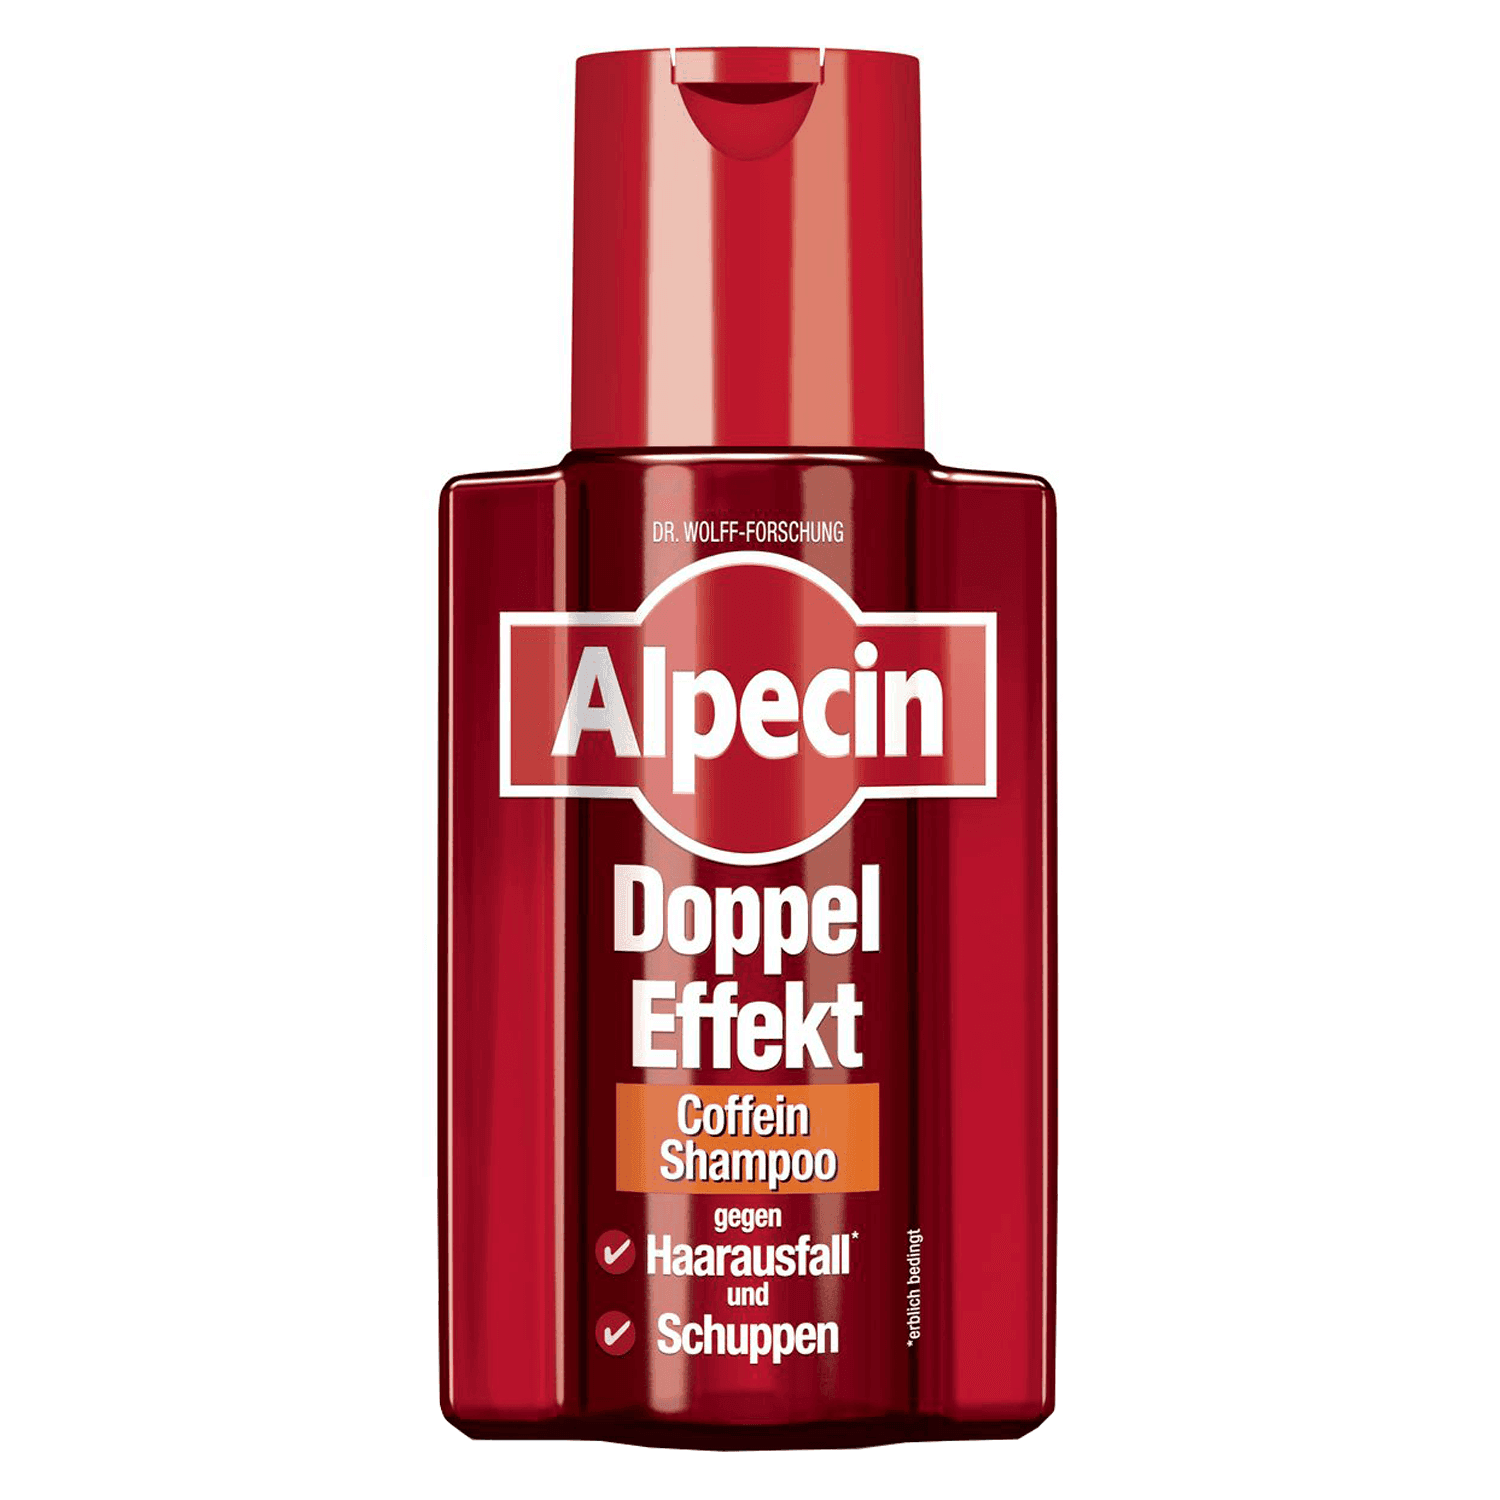 Alpecin - Doppel Effekt Coffein-Shampoo